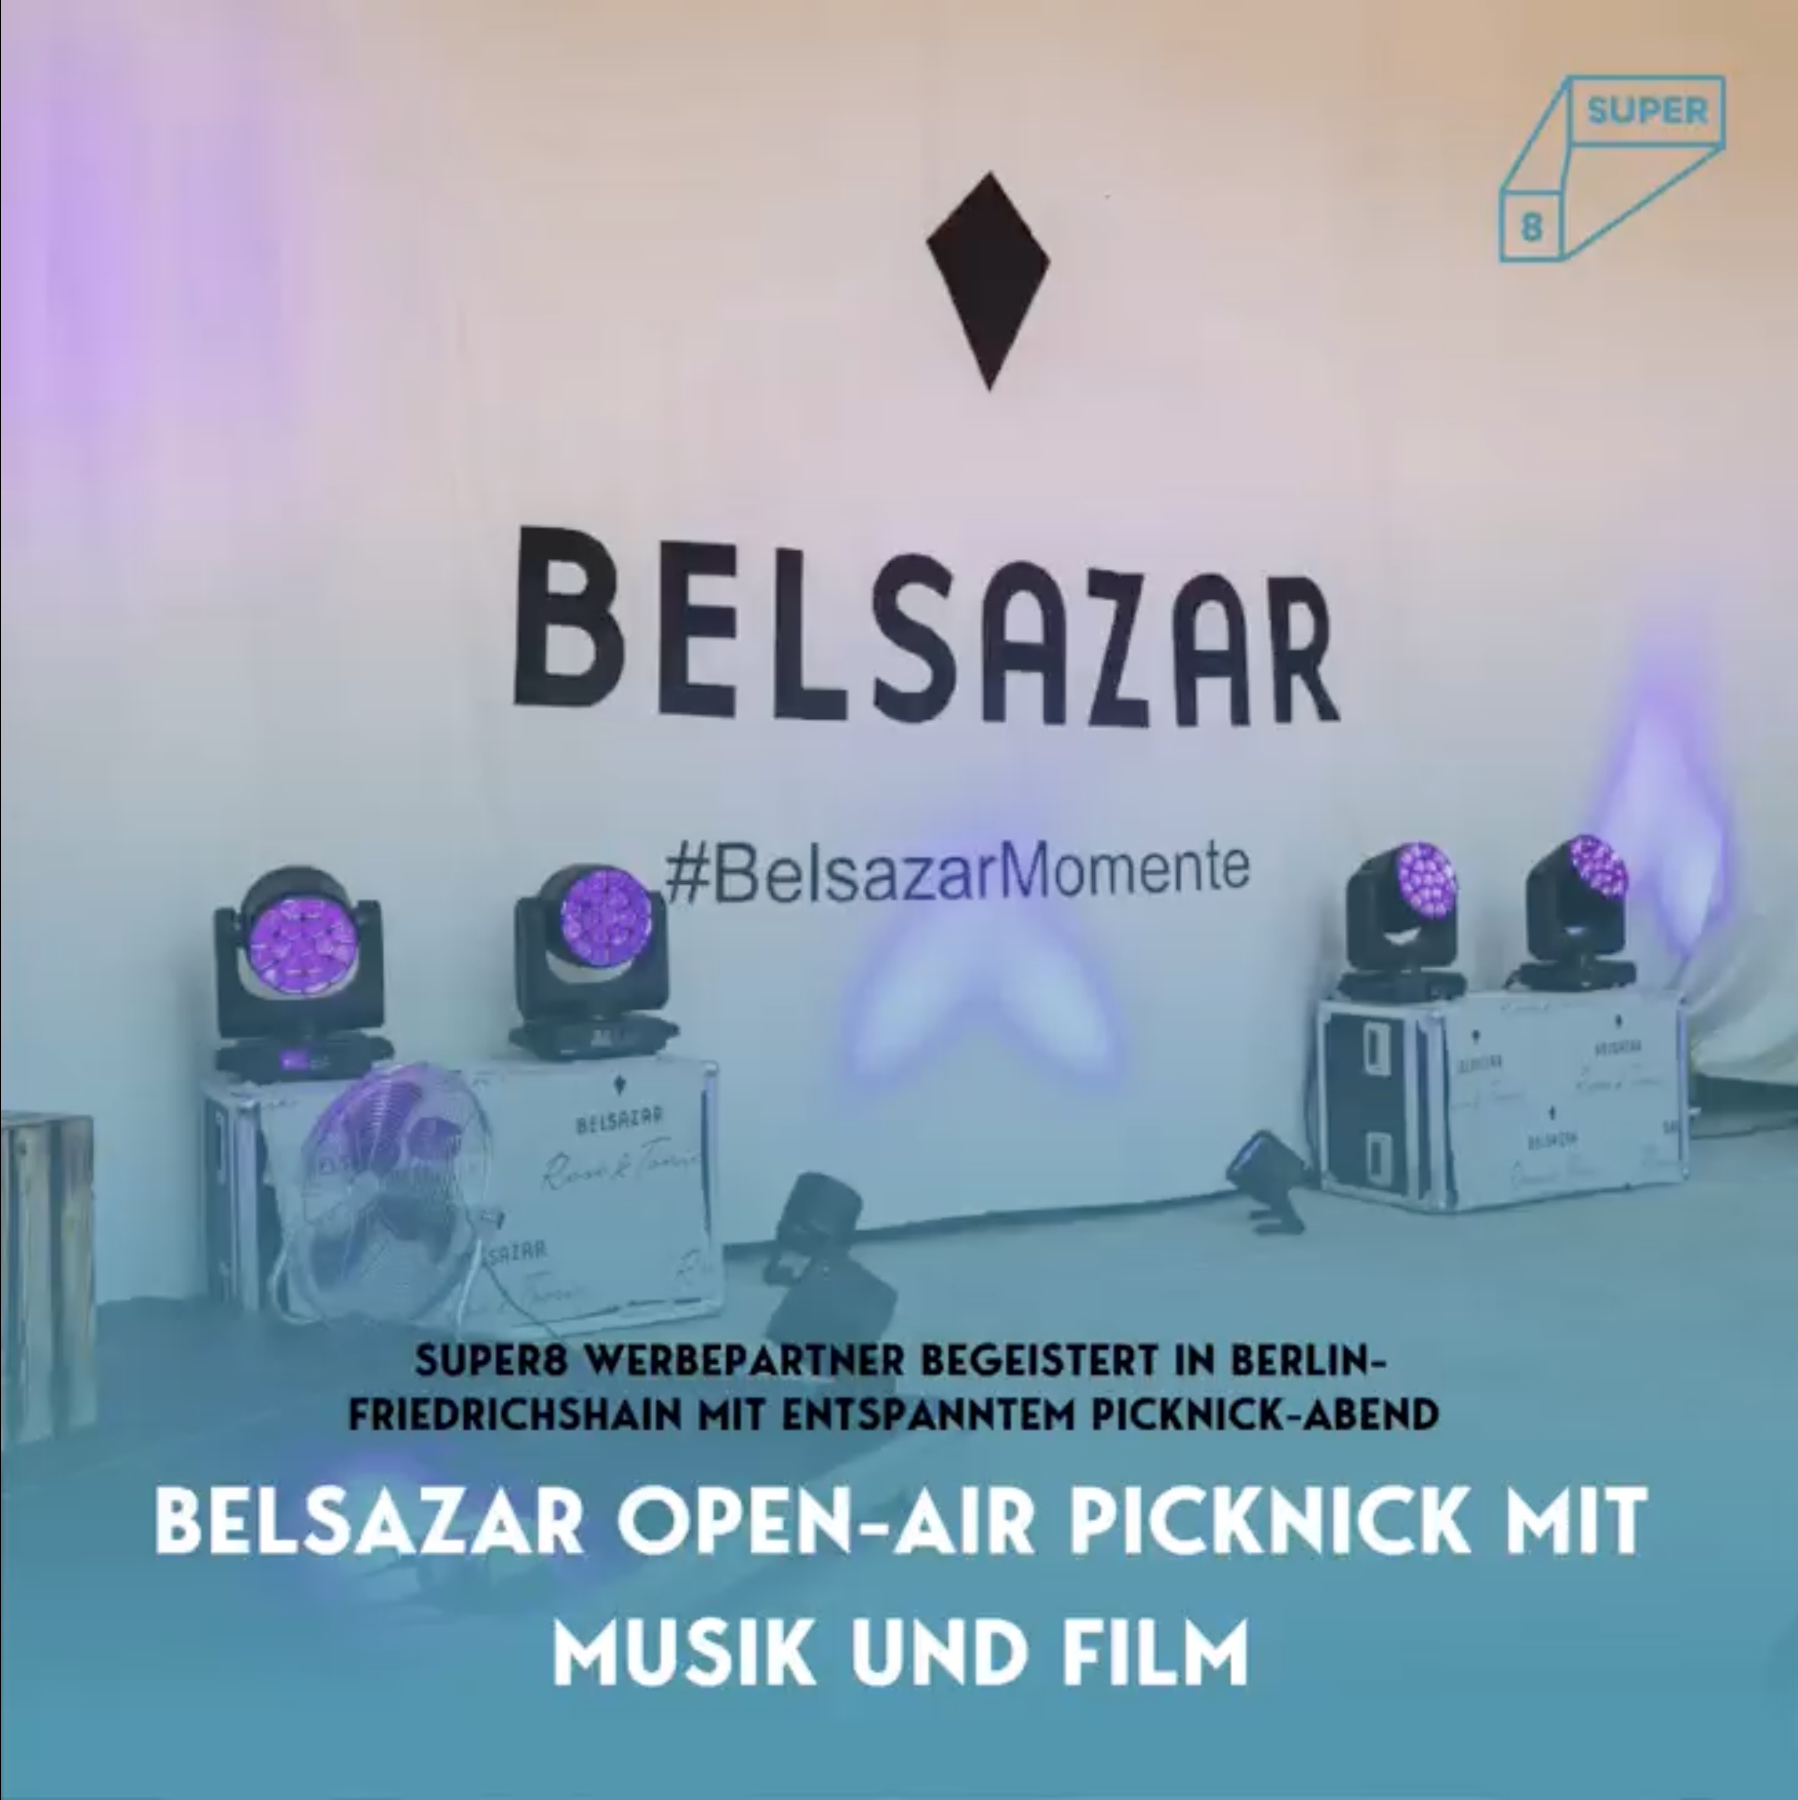 Belsazar Open-Air Picknick mit Musik und Film in Berlin im Freiluftkino Friedrichshain, Leinwand mit Belsazar Logo und pinker Beleuchtung